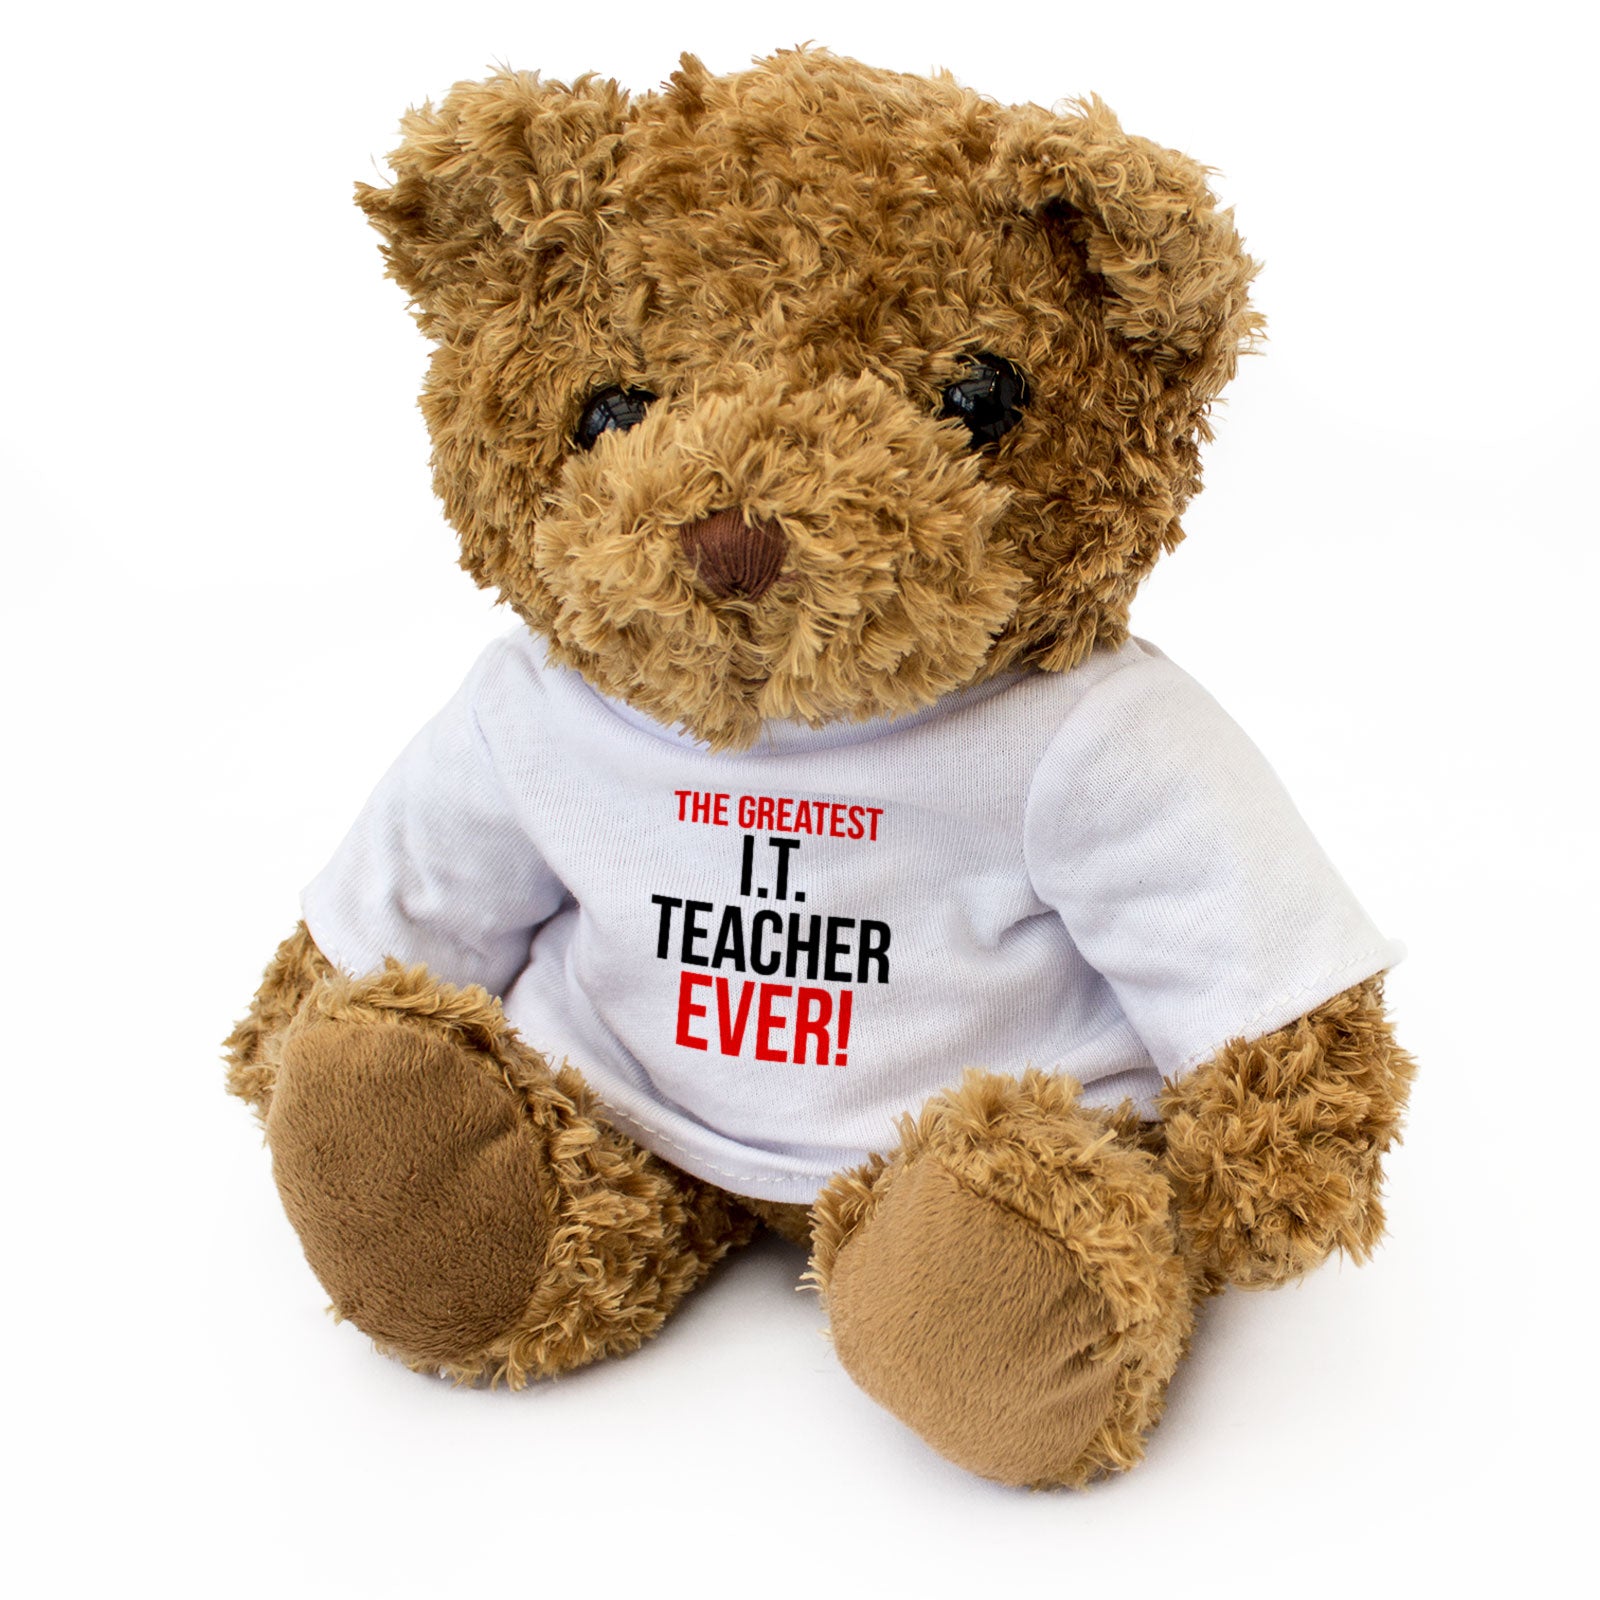 The Greatest IT Teacher Ever - Teddy Bear